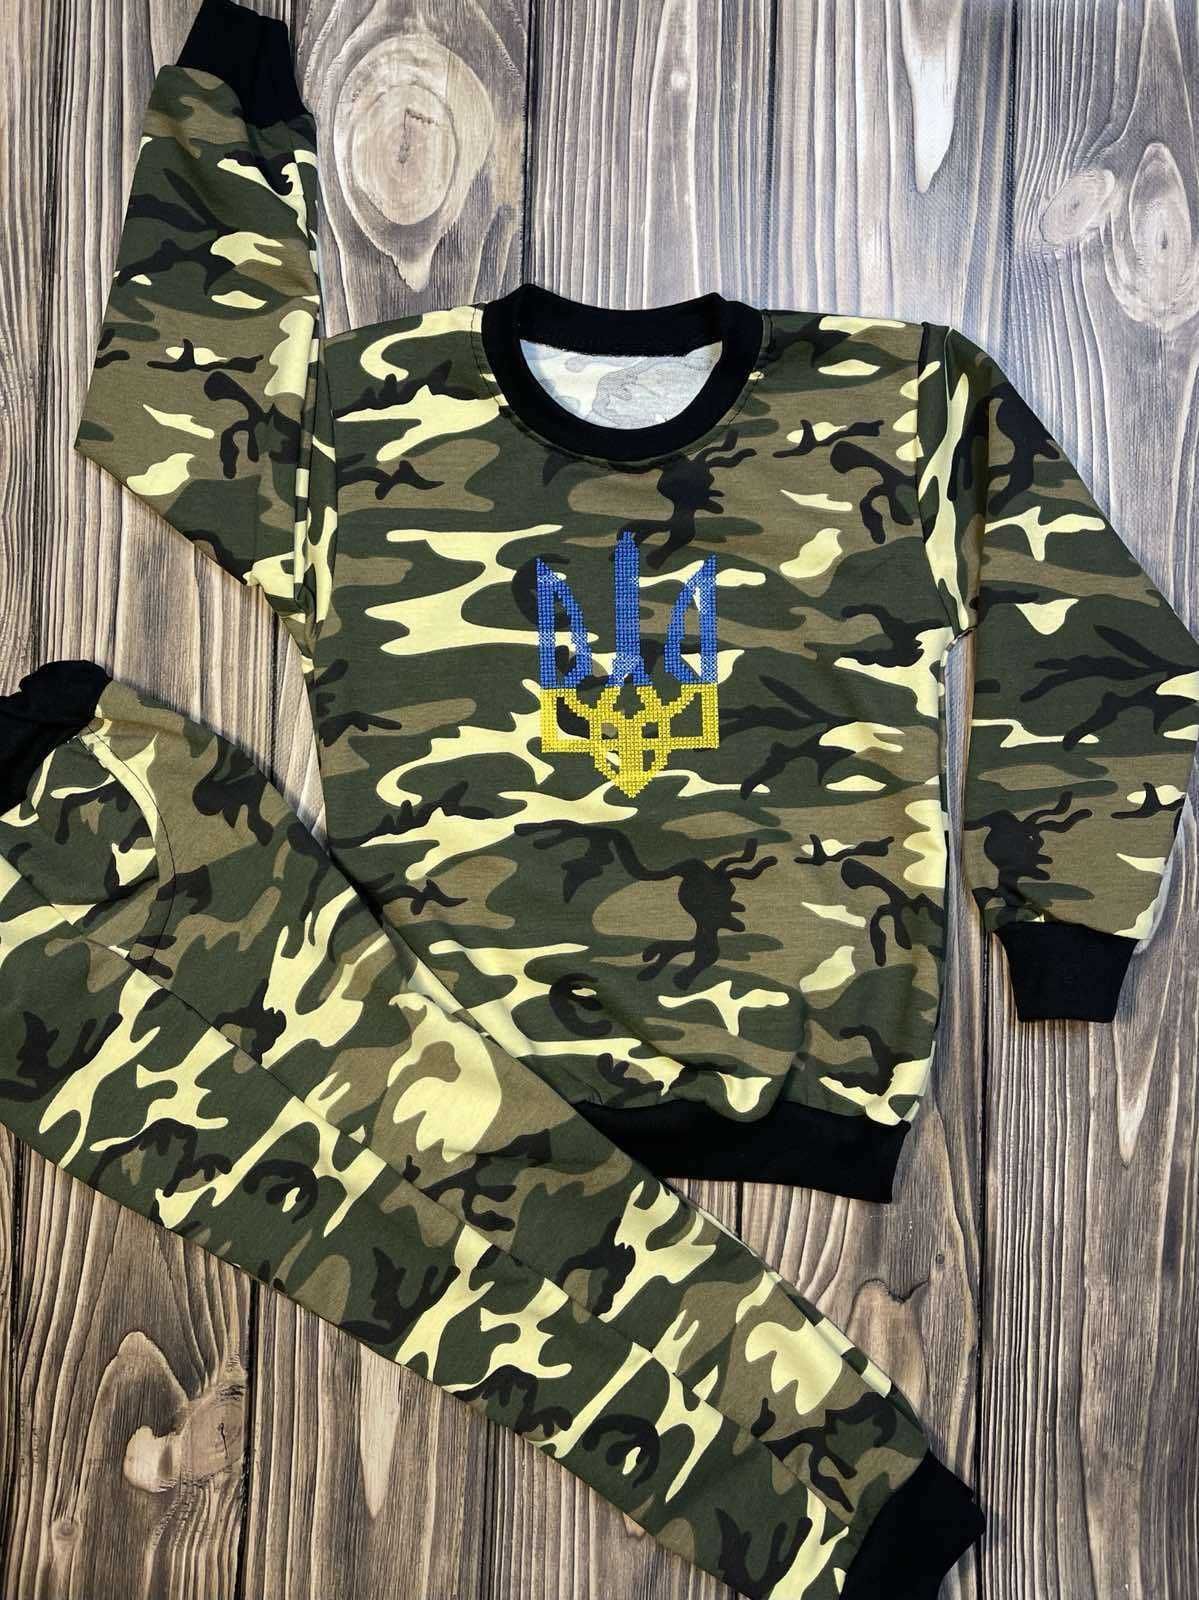 Sportowy cienki bawełniany dres zestaw moro khaki Ukrainie 104-110